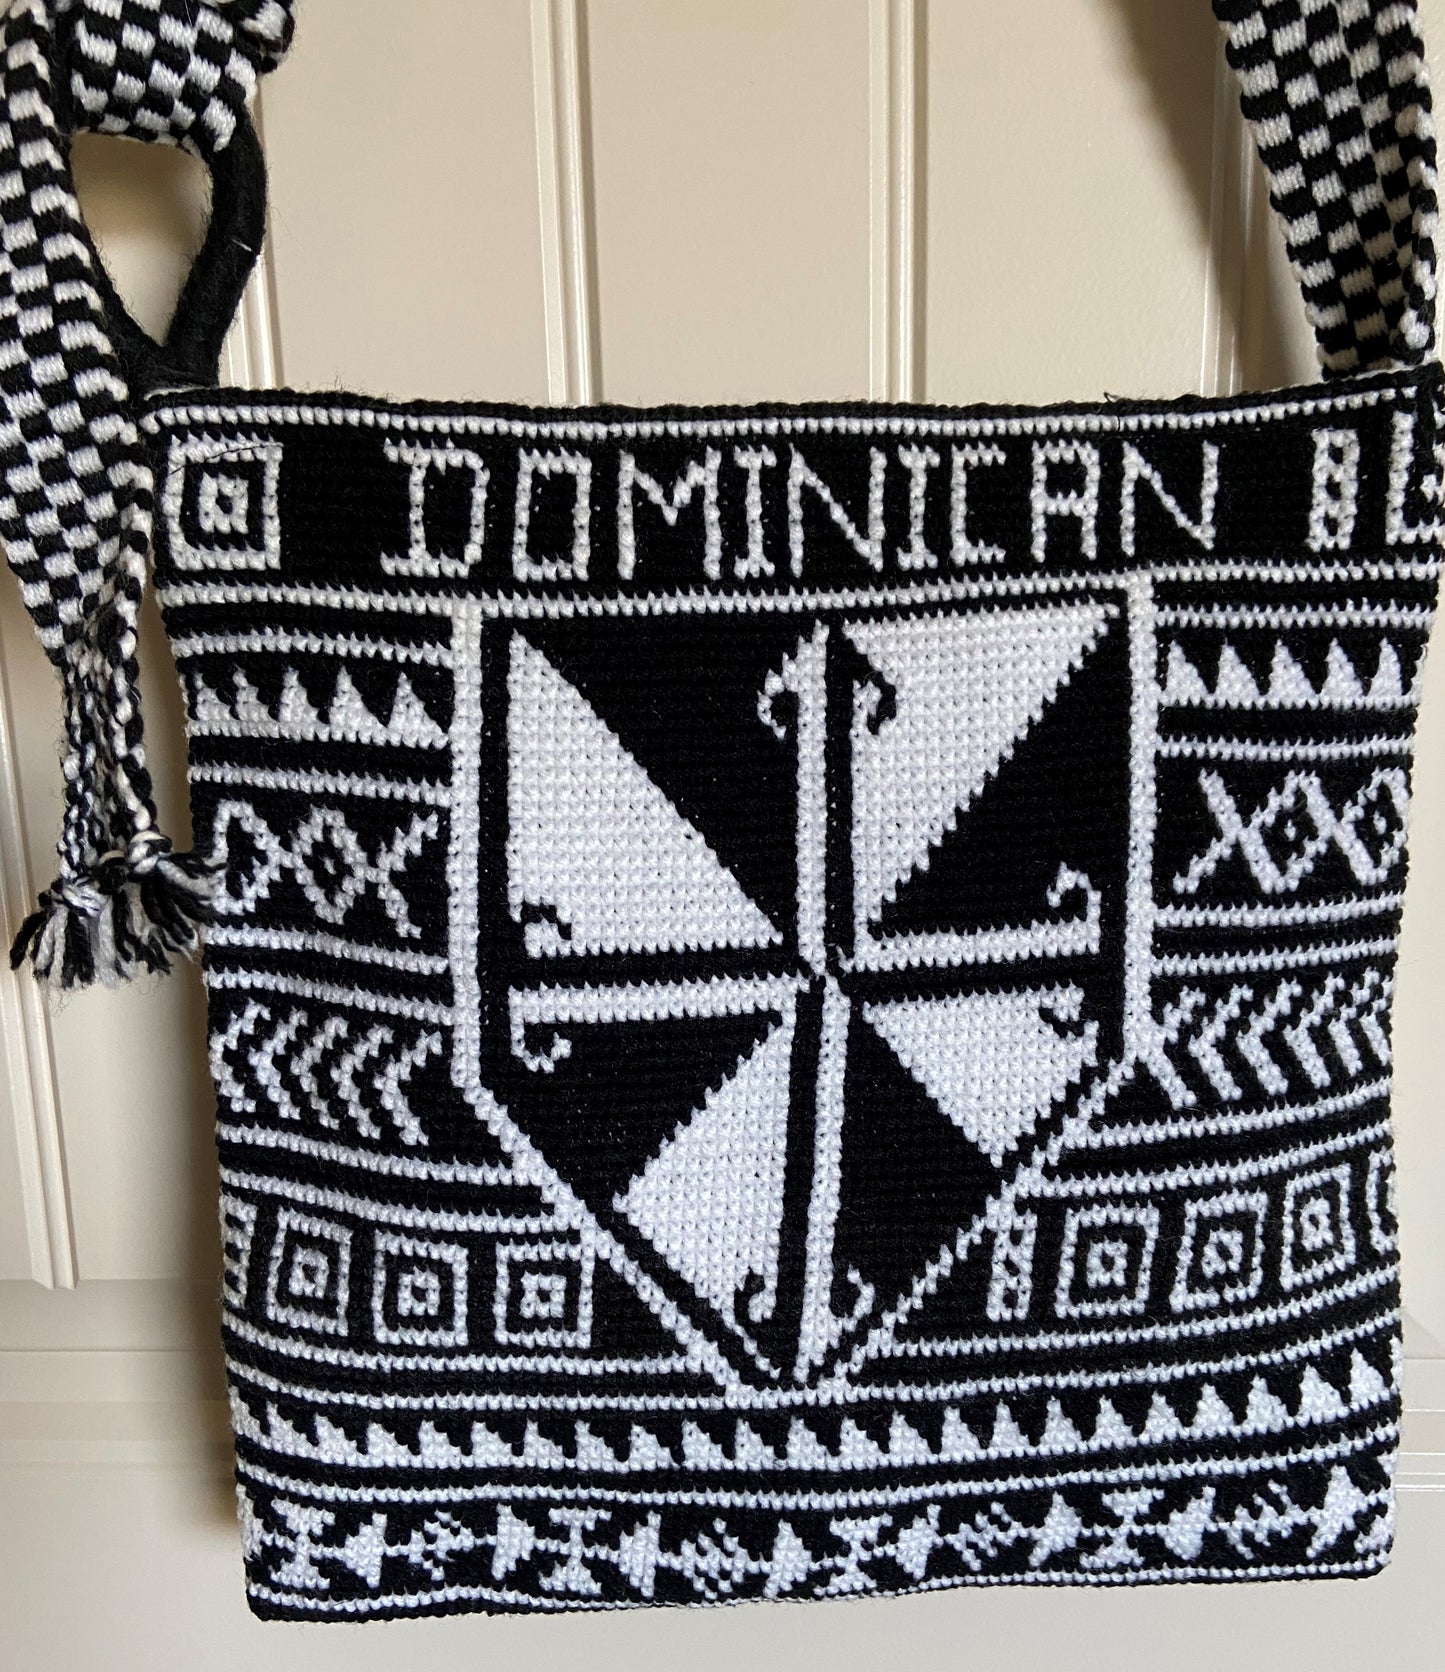 Bag: Black/White Satchel Woven